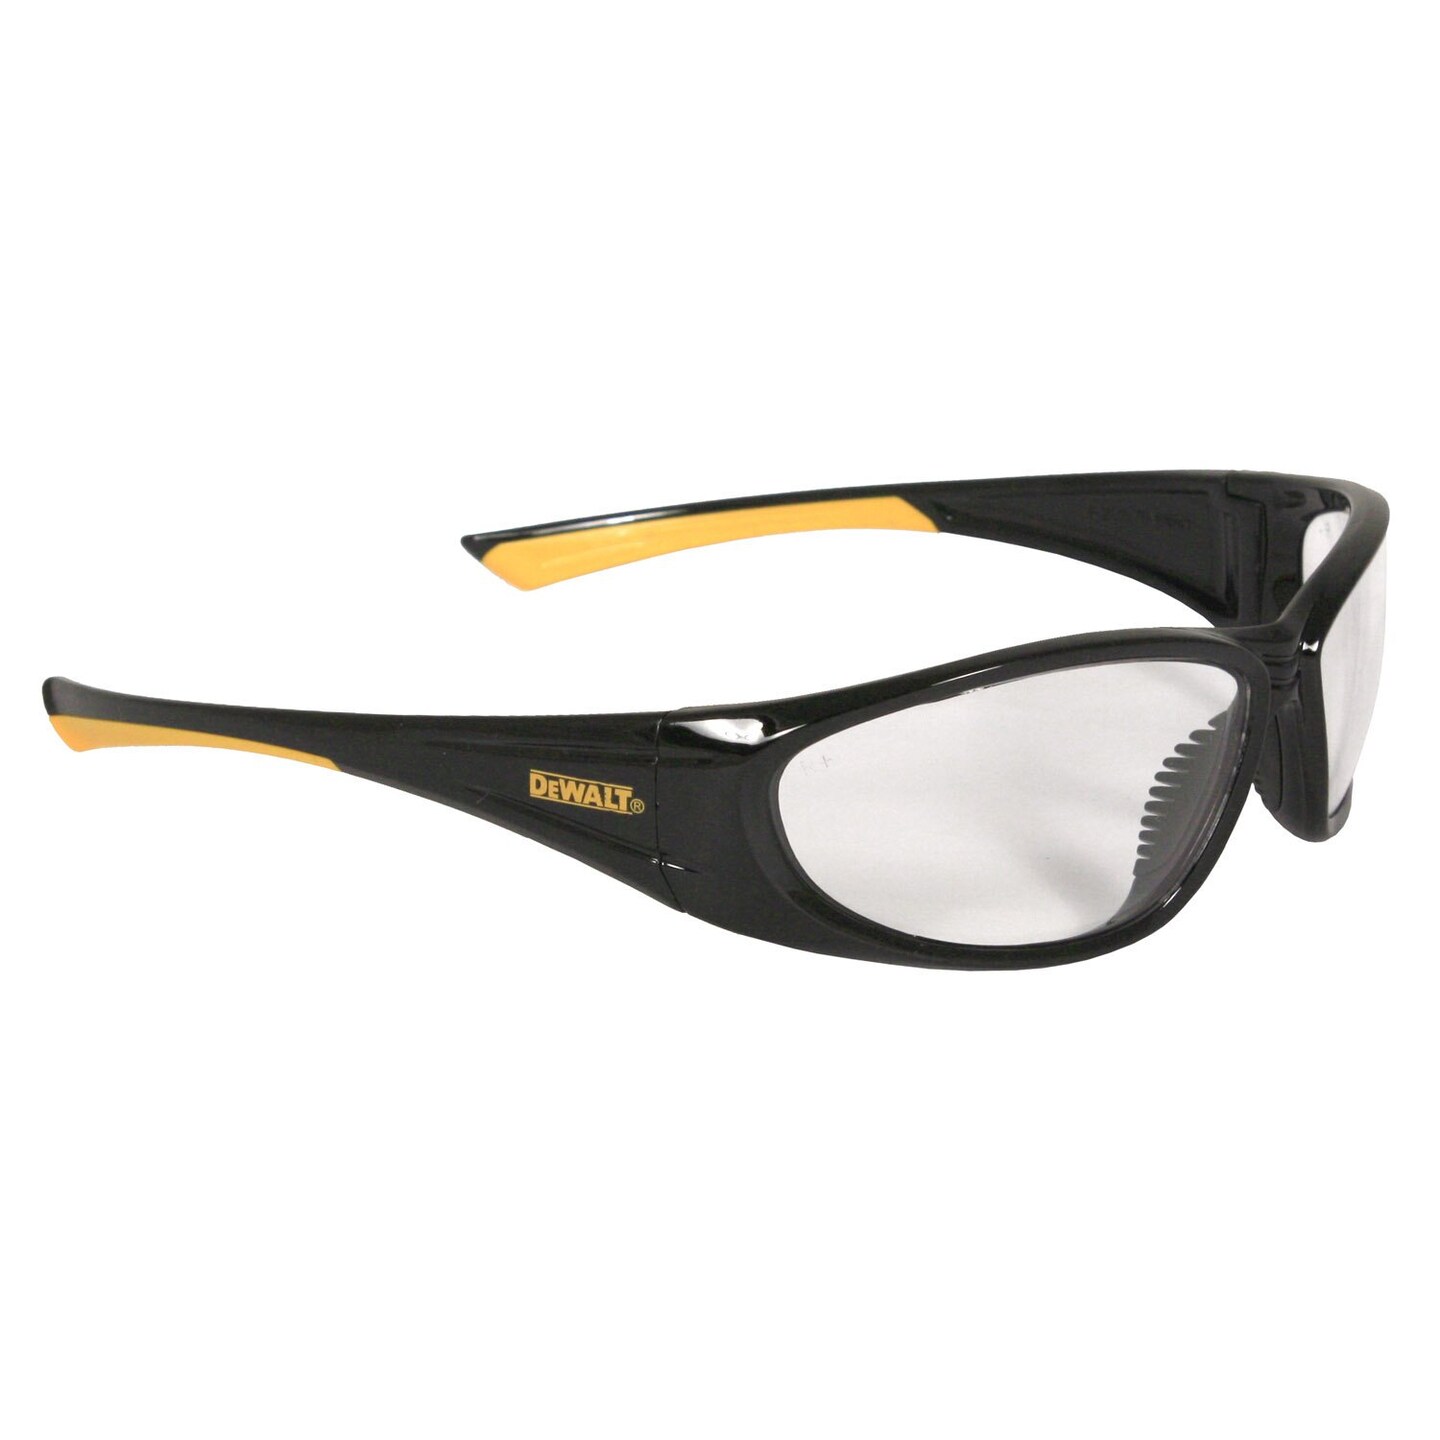 Dewalt Indoor/Outdoor Safety Glasses, Scratch-Resistant, Wraparound